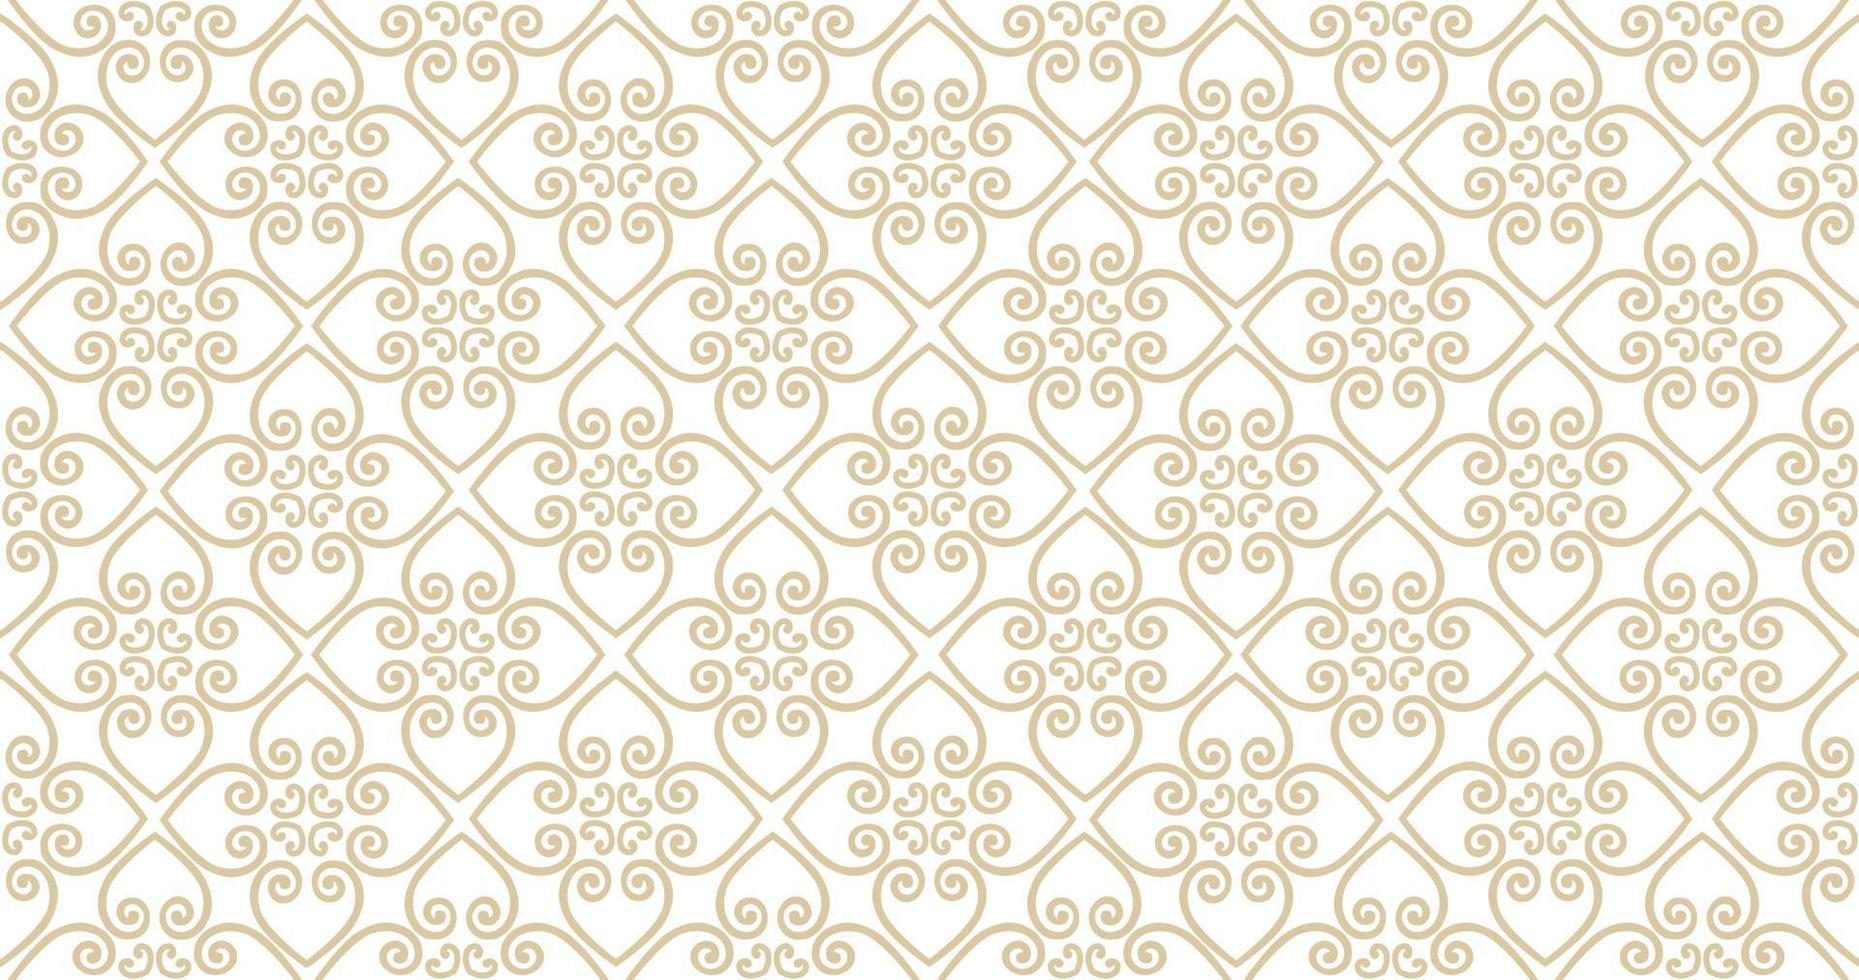 abstracte naadloze patroon. Arabisch lijnornament met geometrische vormen. lineaire bloemen decoratieve textuur. artistieke achtergrond in arabische orient textielstijl. vector